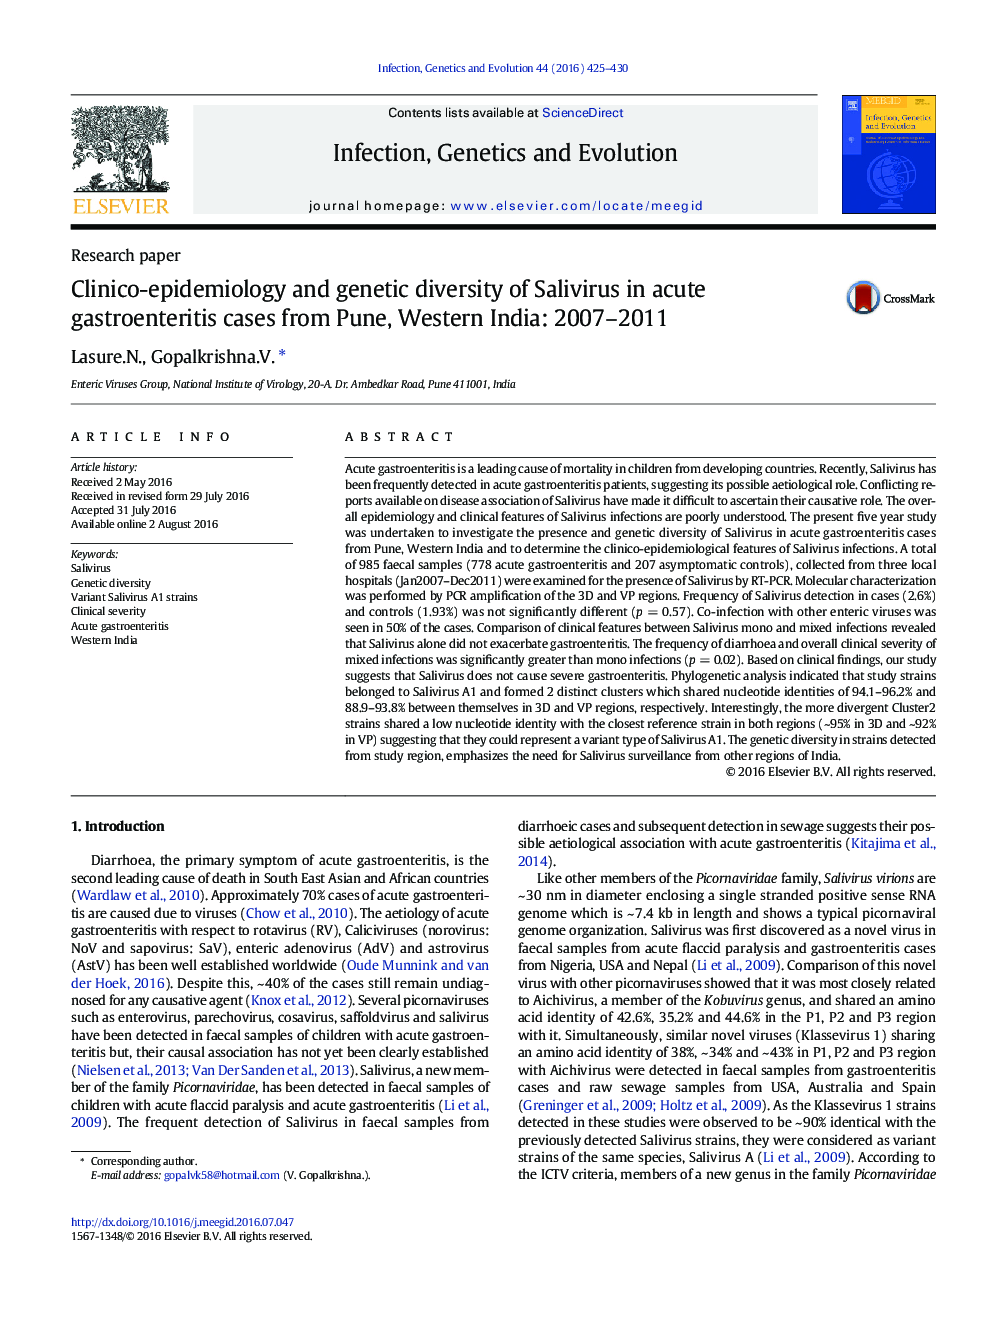 اپیدمیولوژی کلینیکی و تنوع ژنتیکی سالیویروس در موارد گاستروانتریت حاد از پونه، هند غربی: 2007-2011 